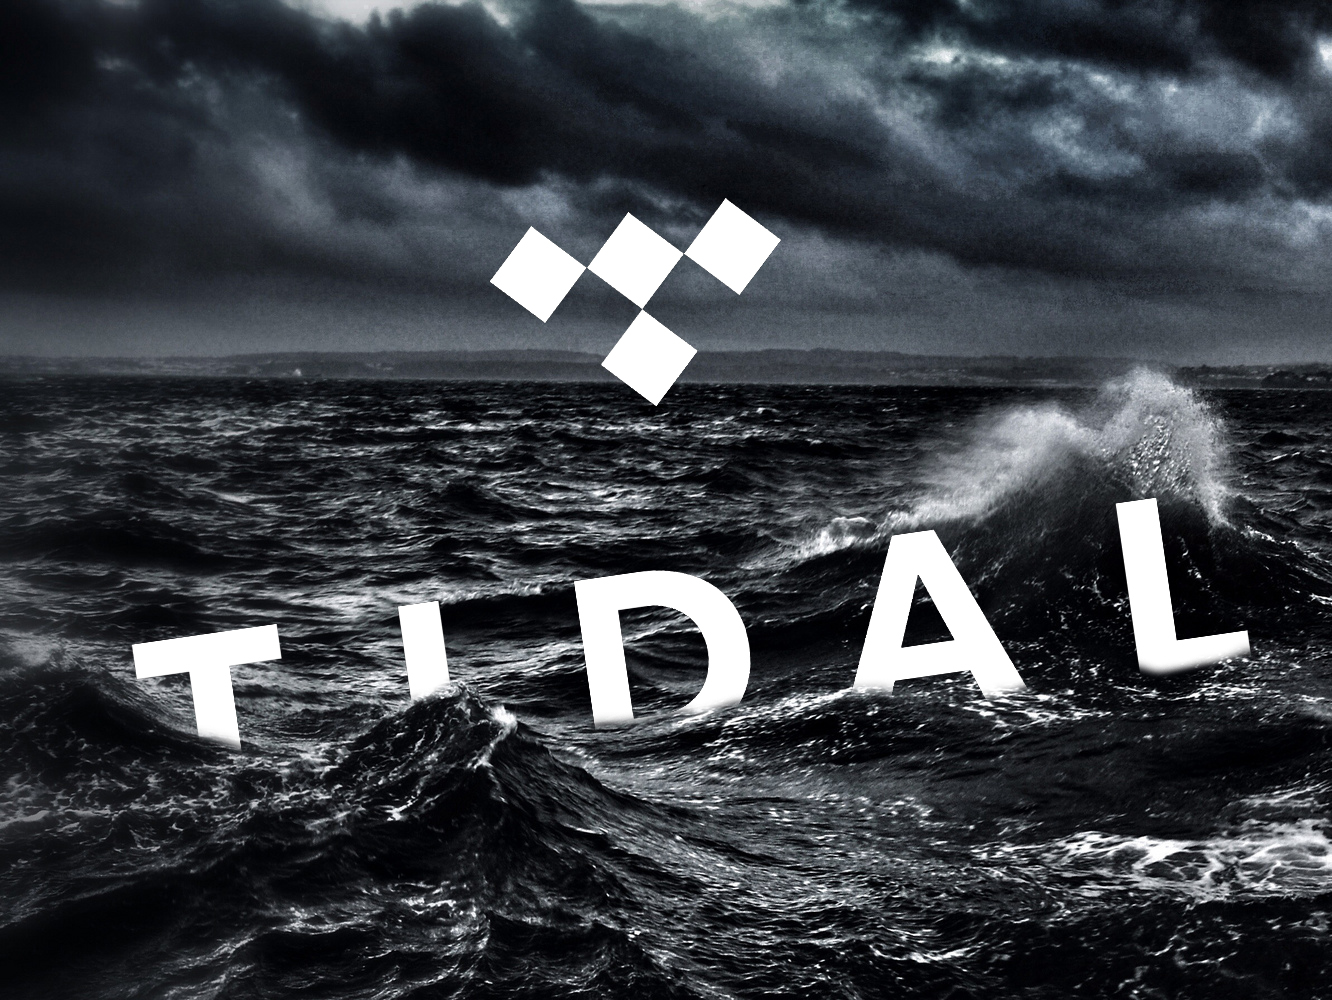  La prensa noruega vuelve a dejar a Tidal con el culo al aire, confirmando su fracaso